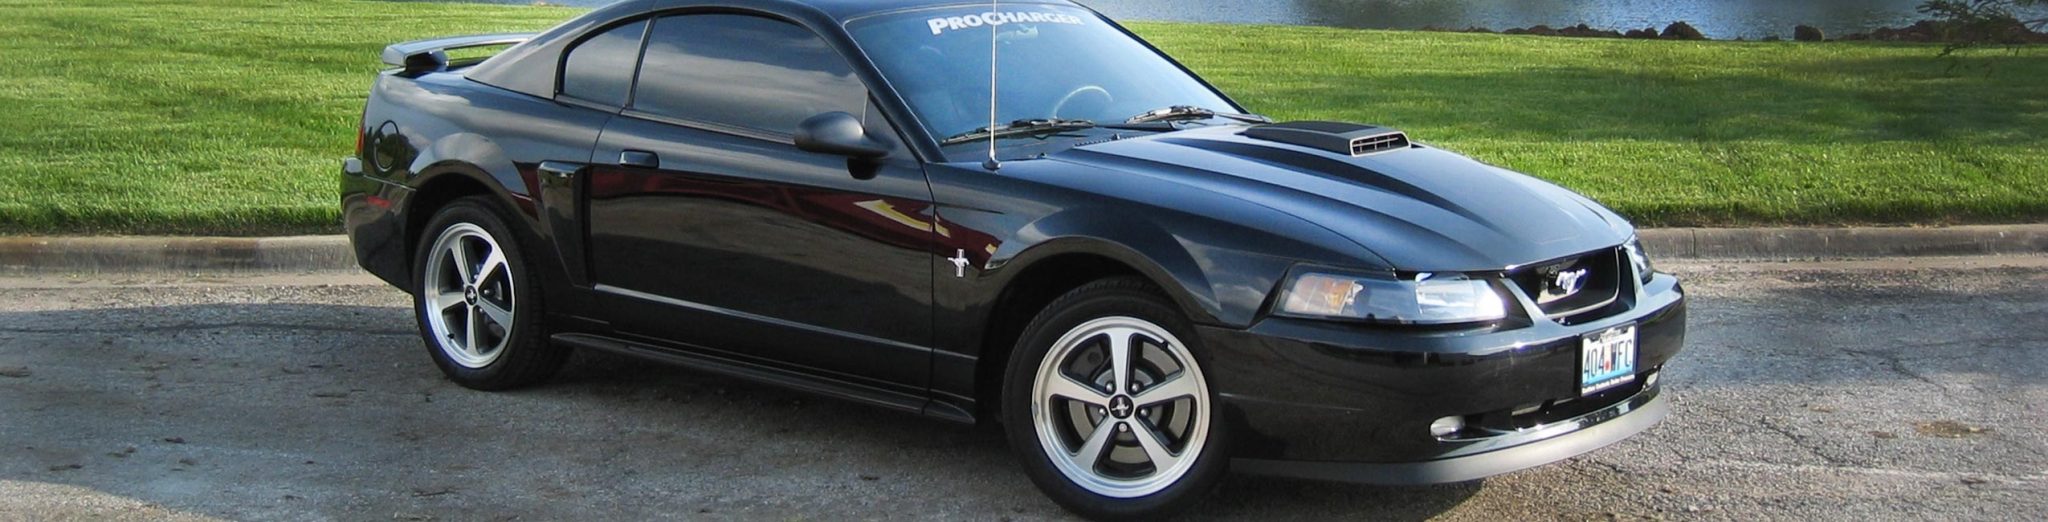 2003 - 04 Mustang Mach 1 (4.6 4V)